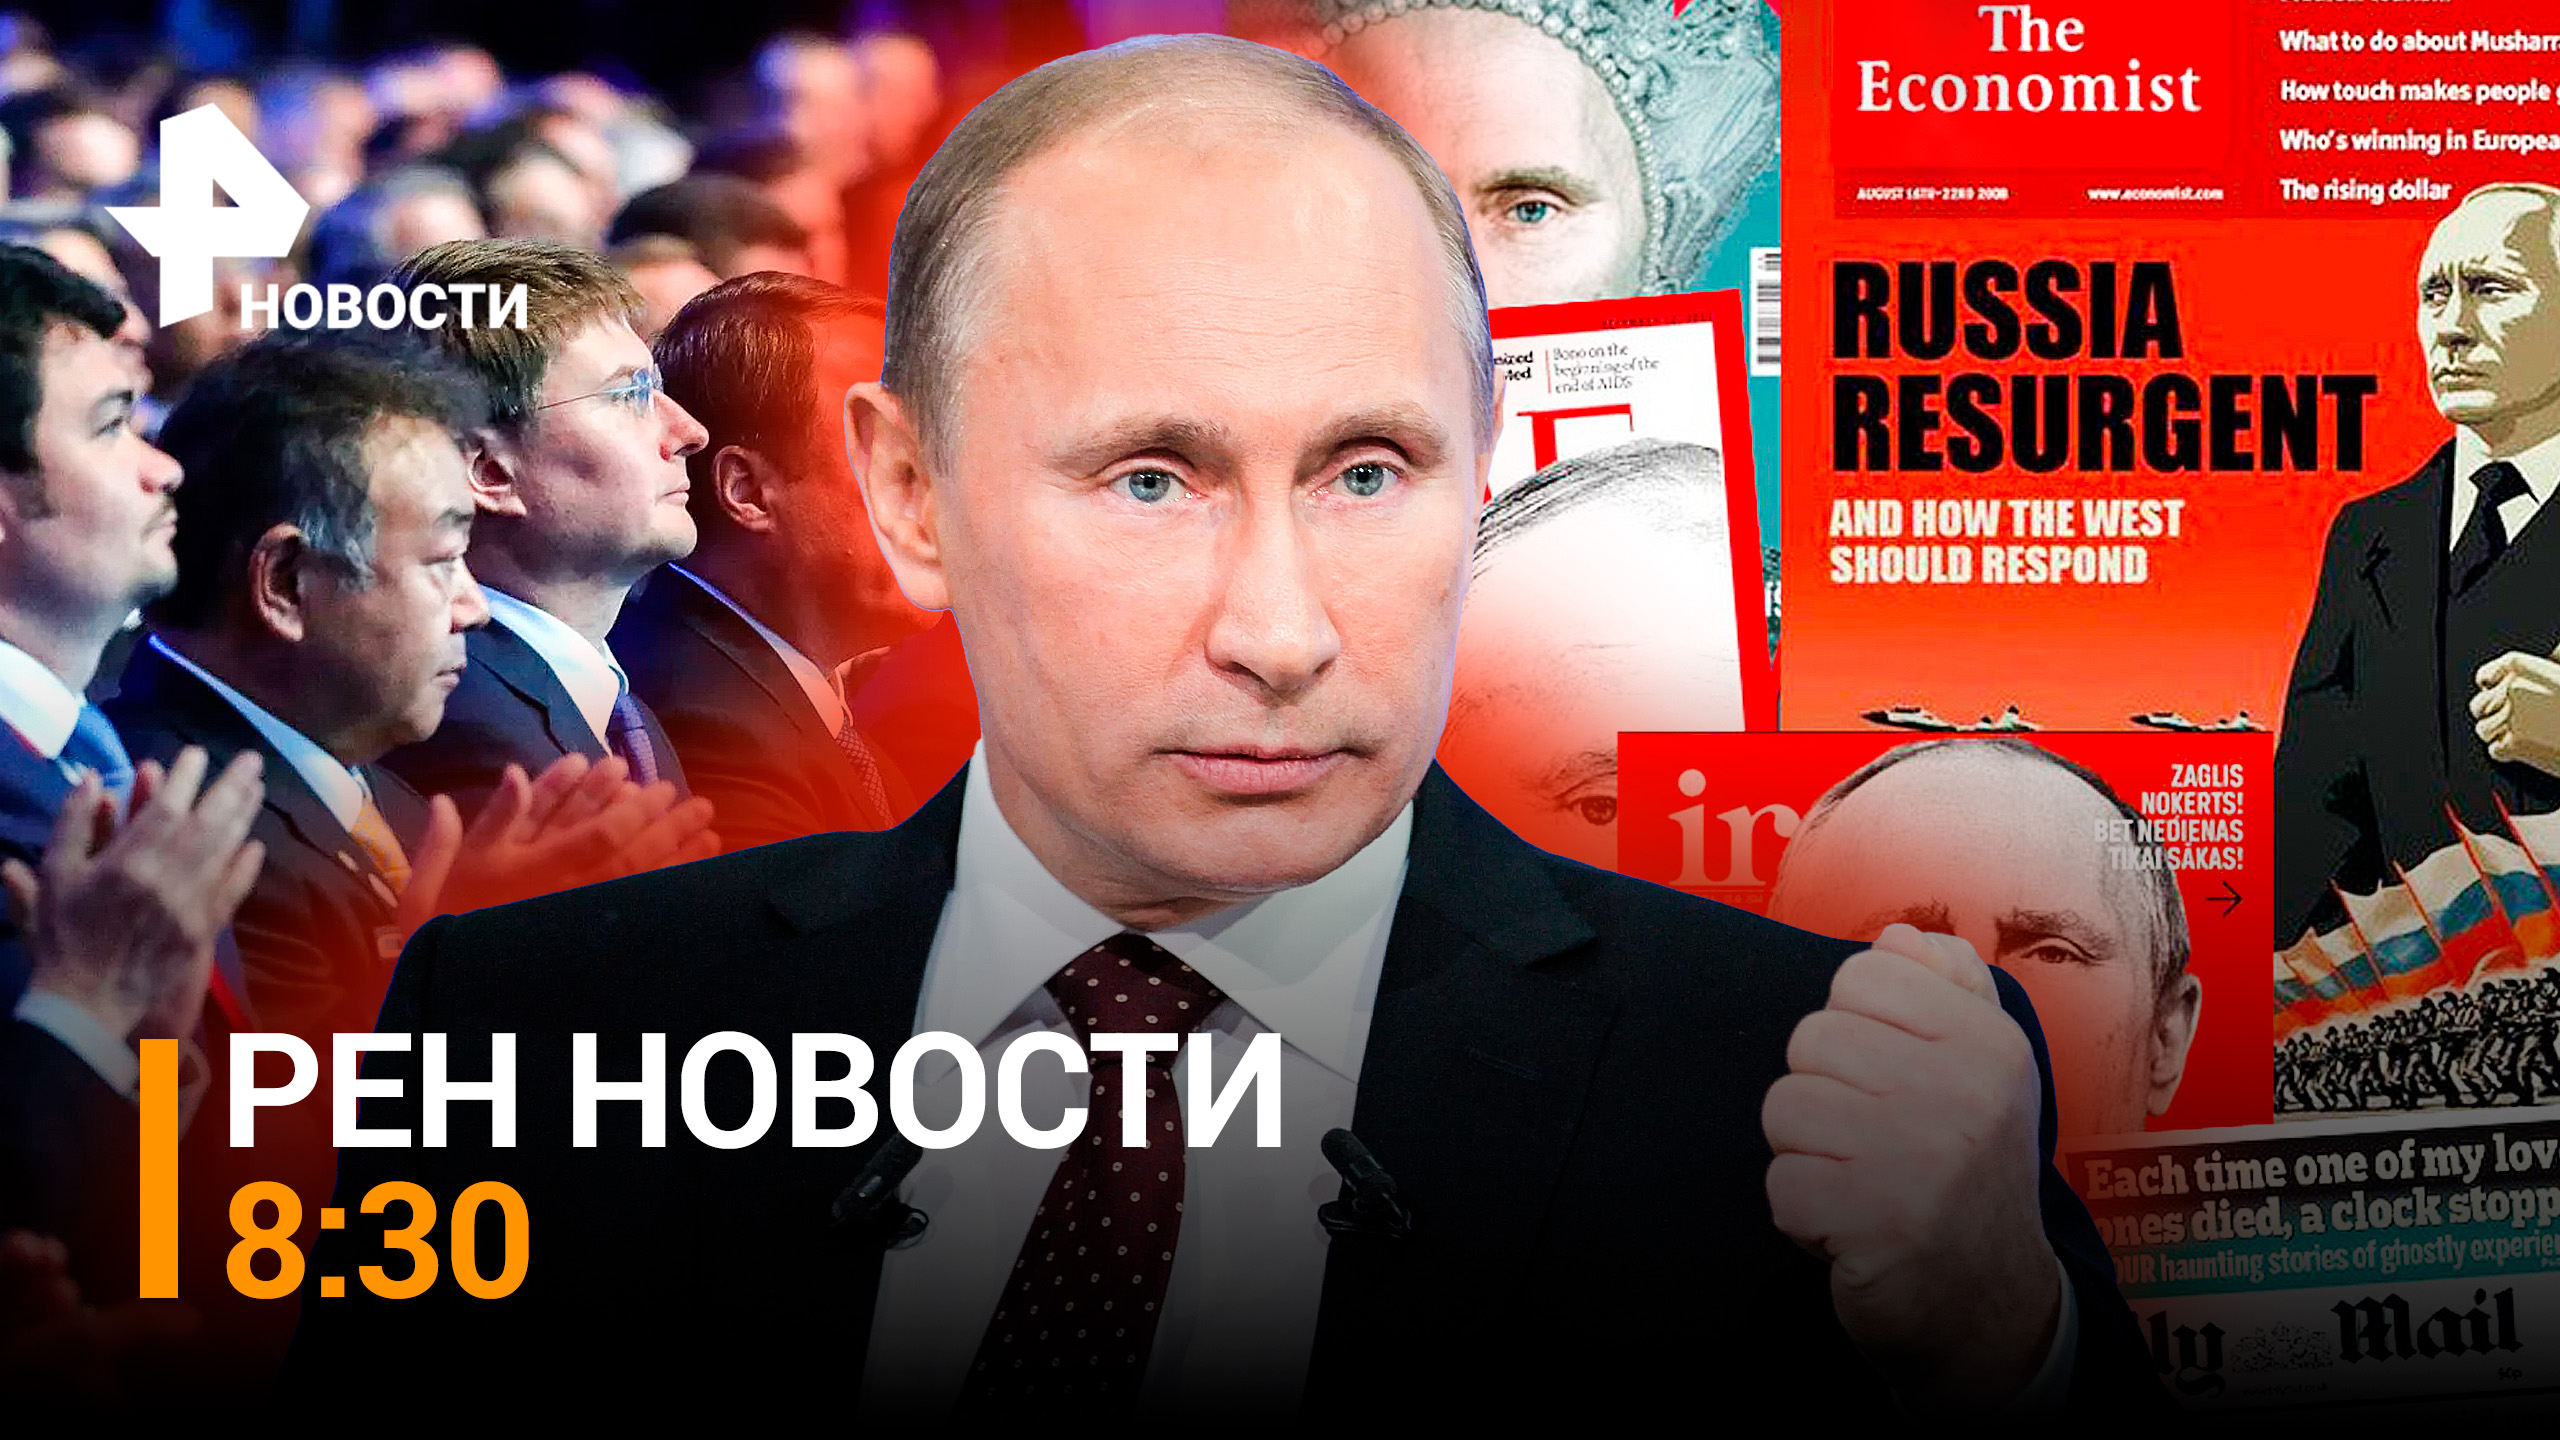 Мировая реакция на высказывания Владимира Путина во время ВЭФ-2022 / РЕН НОВОСТИ 8:30 от 8.09.22